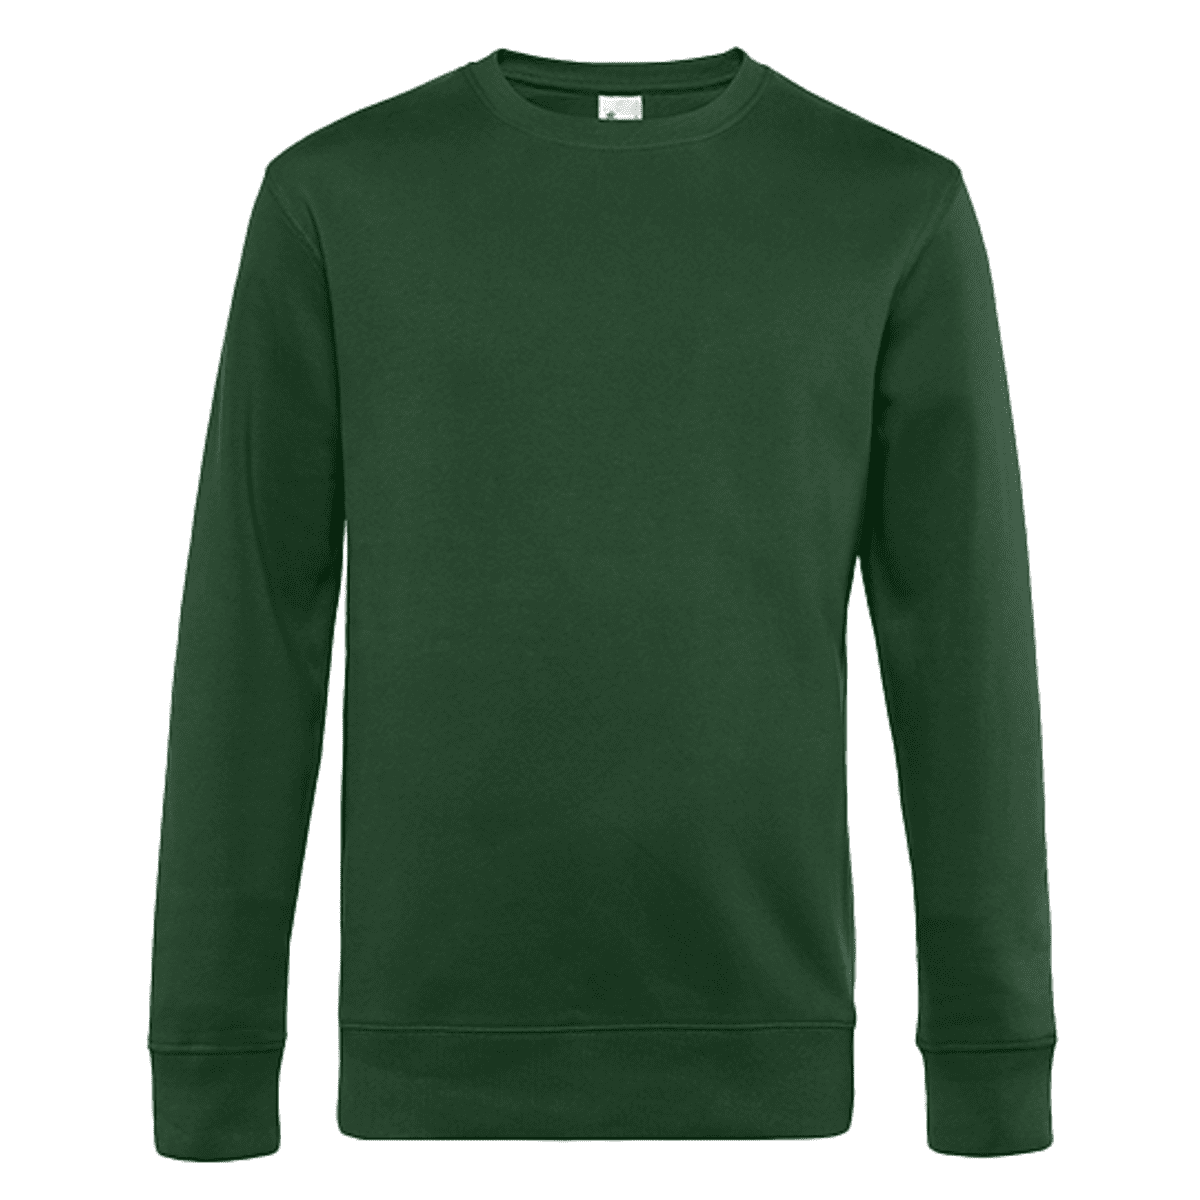 Rundhals-Sweatshirt grün